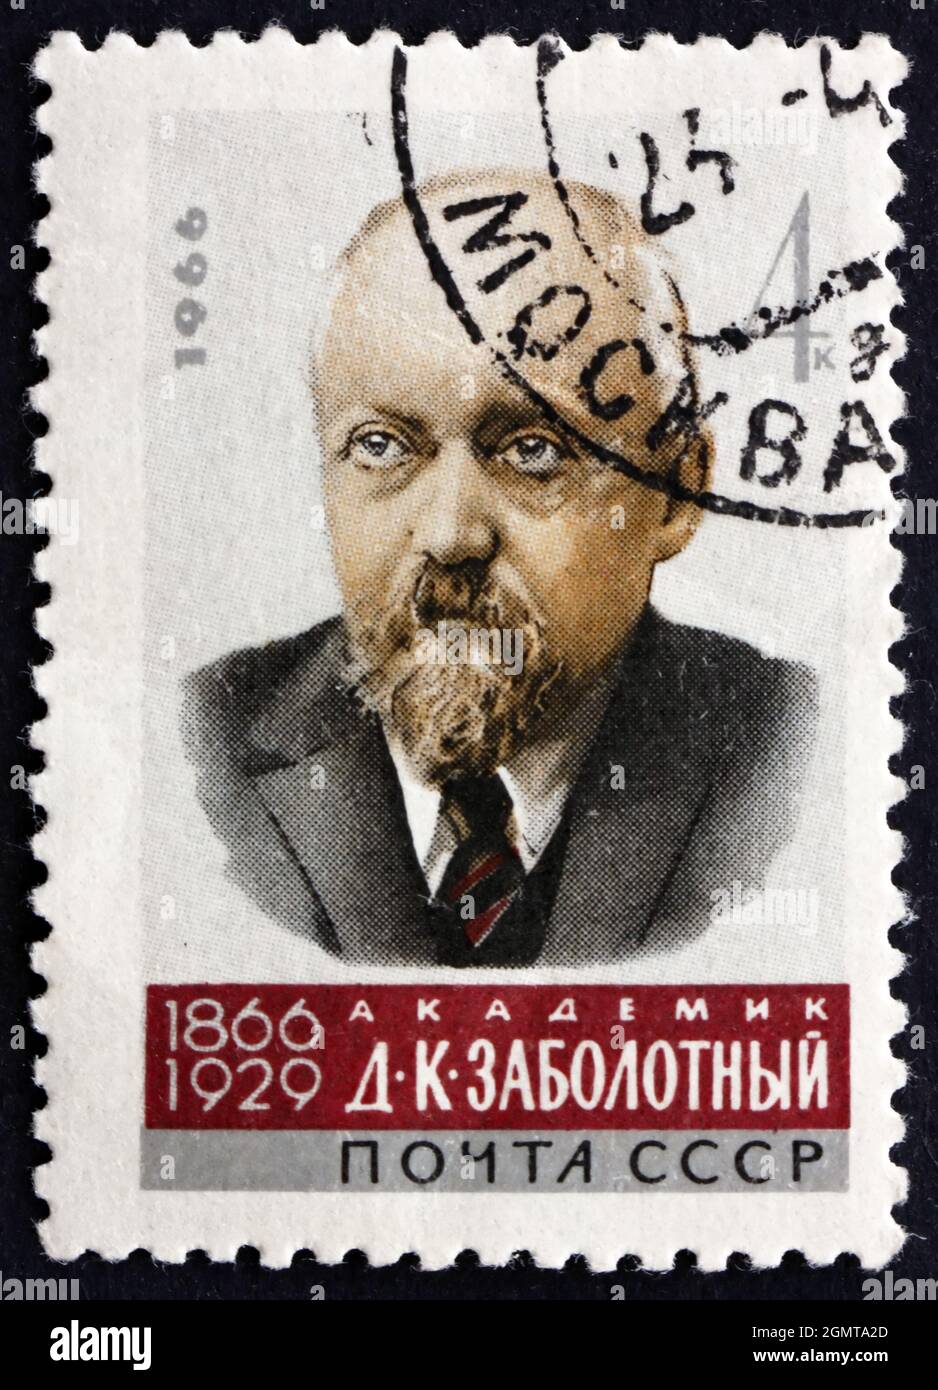 RUSSLAND - UM 1966: Eine in Russland gedruckte Marke zeigt Danylo Kyrylovych Sabolotny, den ukrainischen Epidemiologen und Mikrobiologen, um 1966 Stockfoto